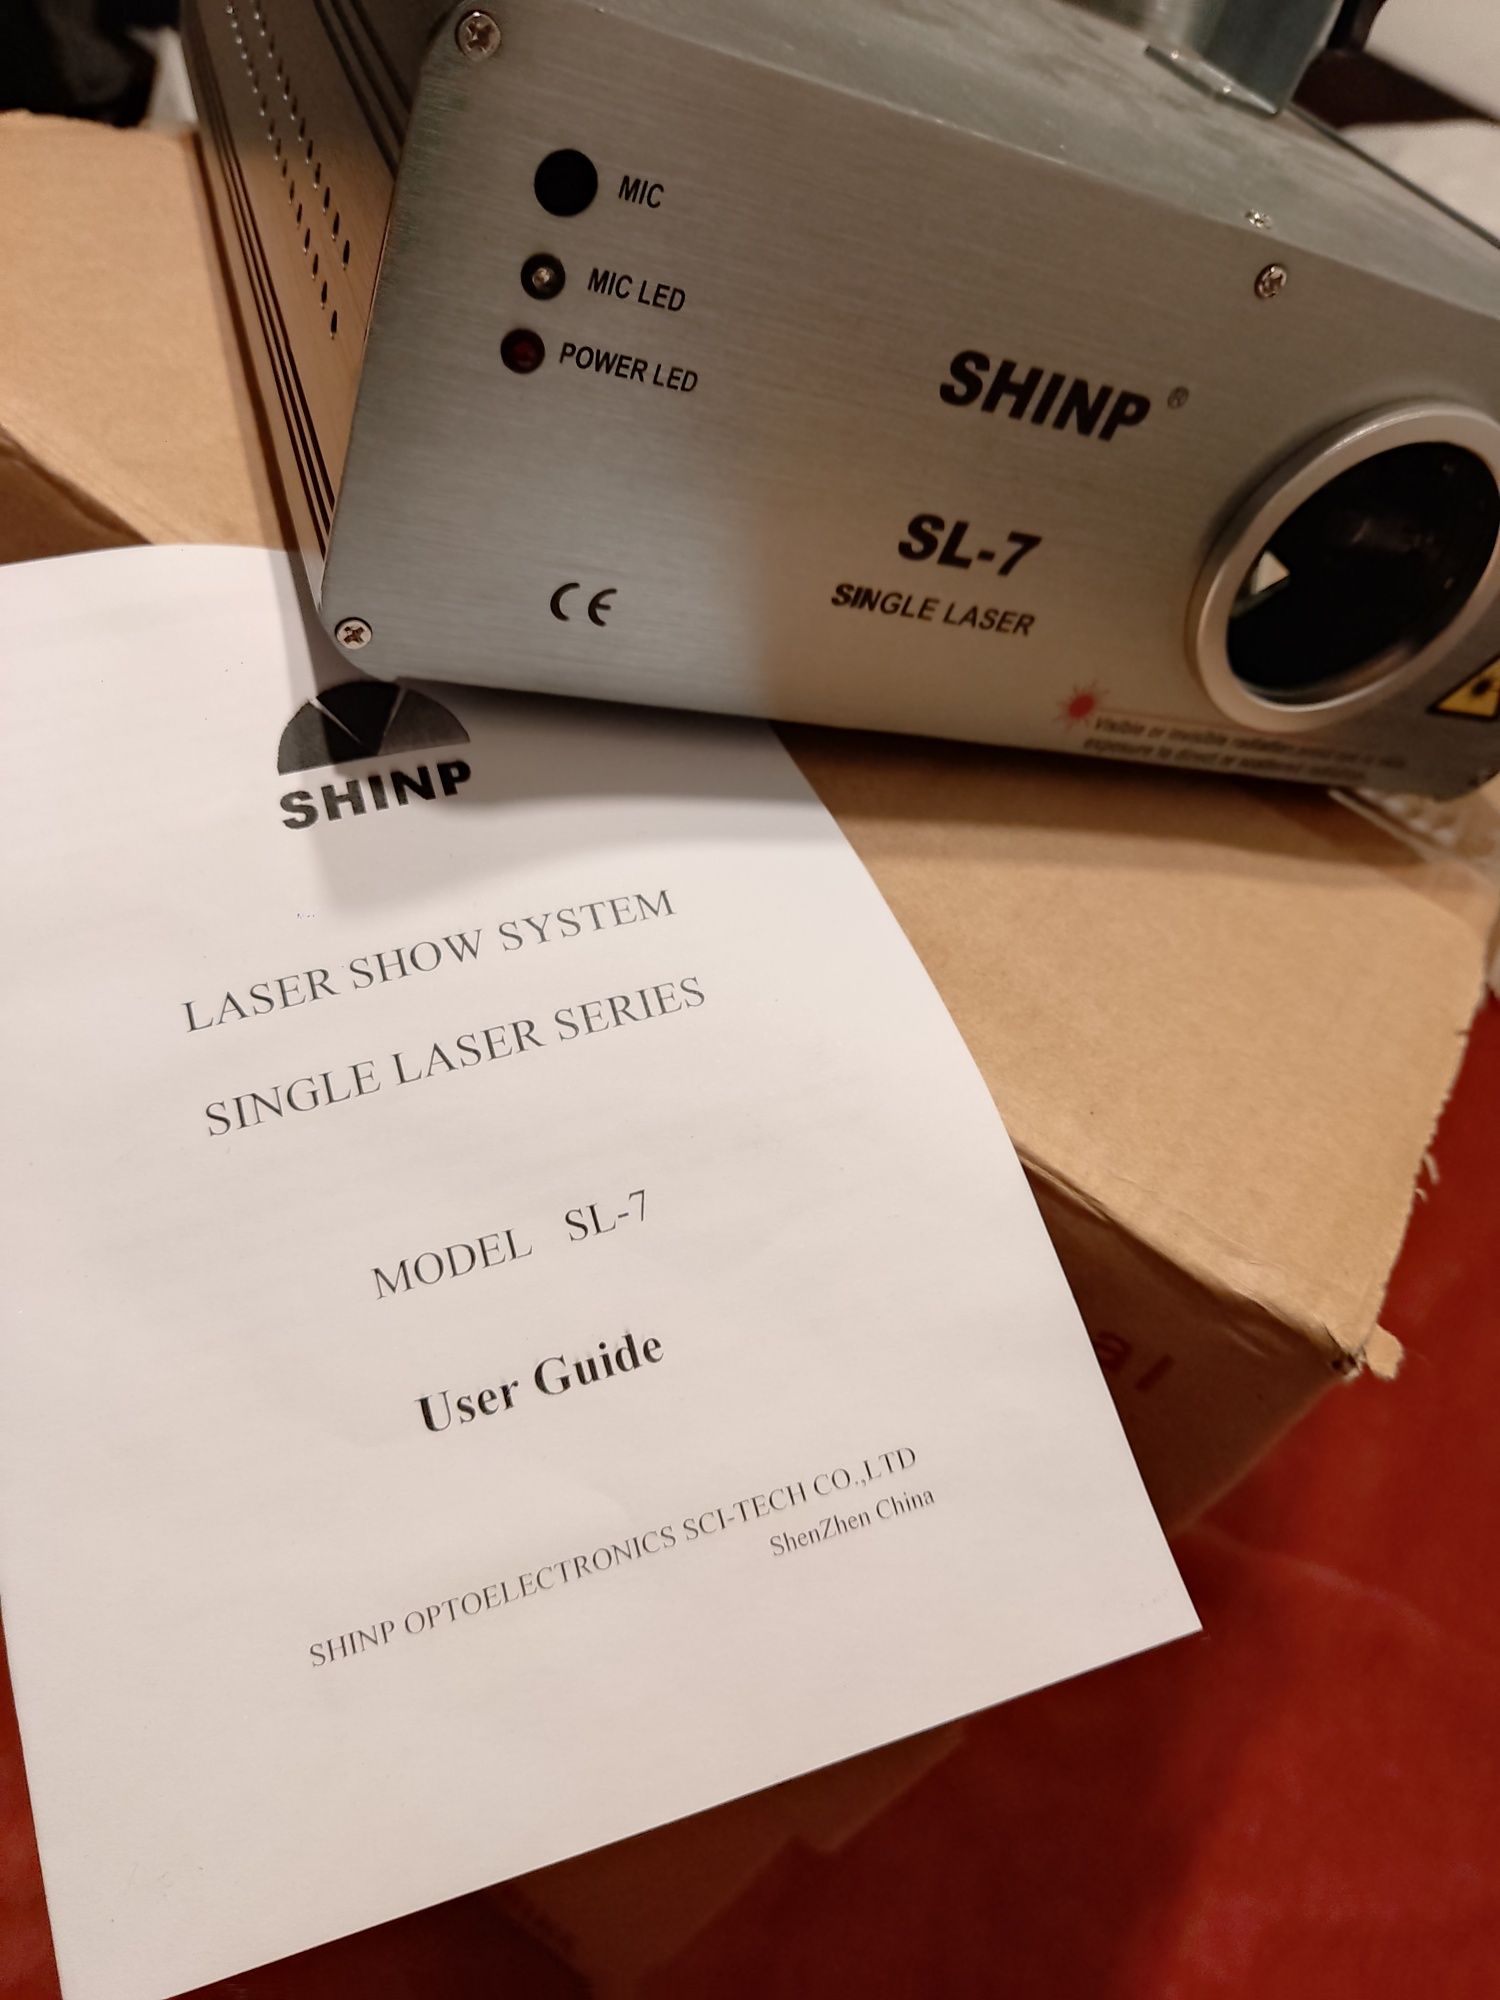 2 lasere shinp model sl-7, noi nouțe (la cutie)600 ron.